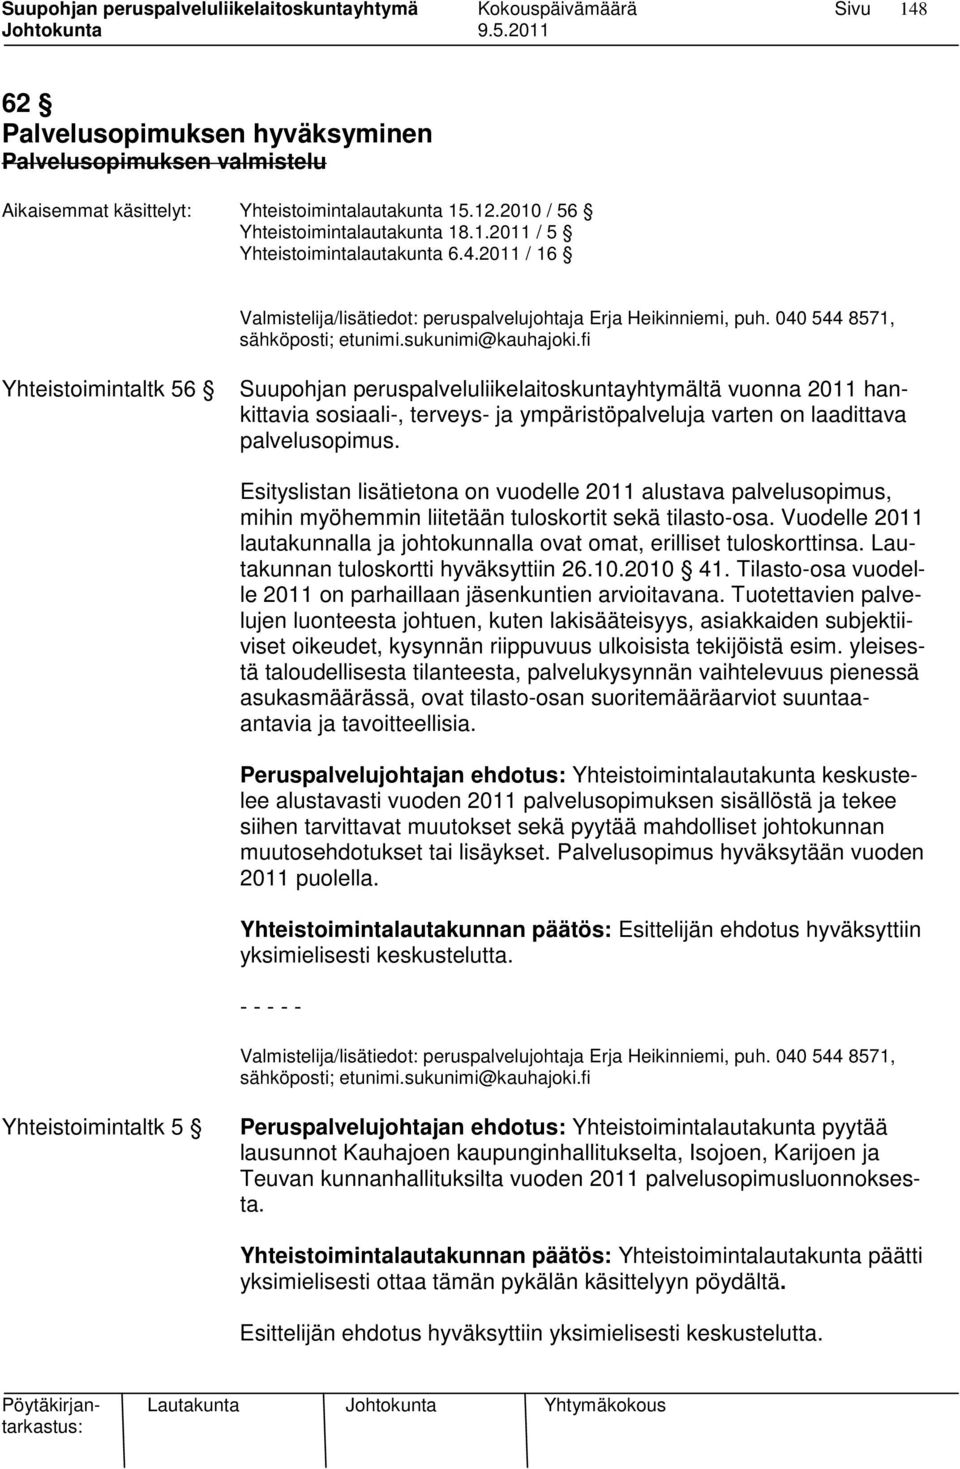 fi Yhteistoimintaltk 56 Suupohjan peruspalveluliikelaitoskuntayhtymältä vuonna 2011 hankittavia sosiaali-, terveys- ja ympäristöpalveluja varten on laadittava palvelusopimus.